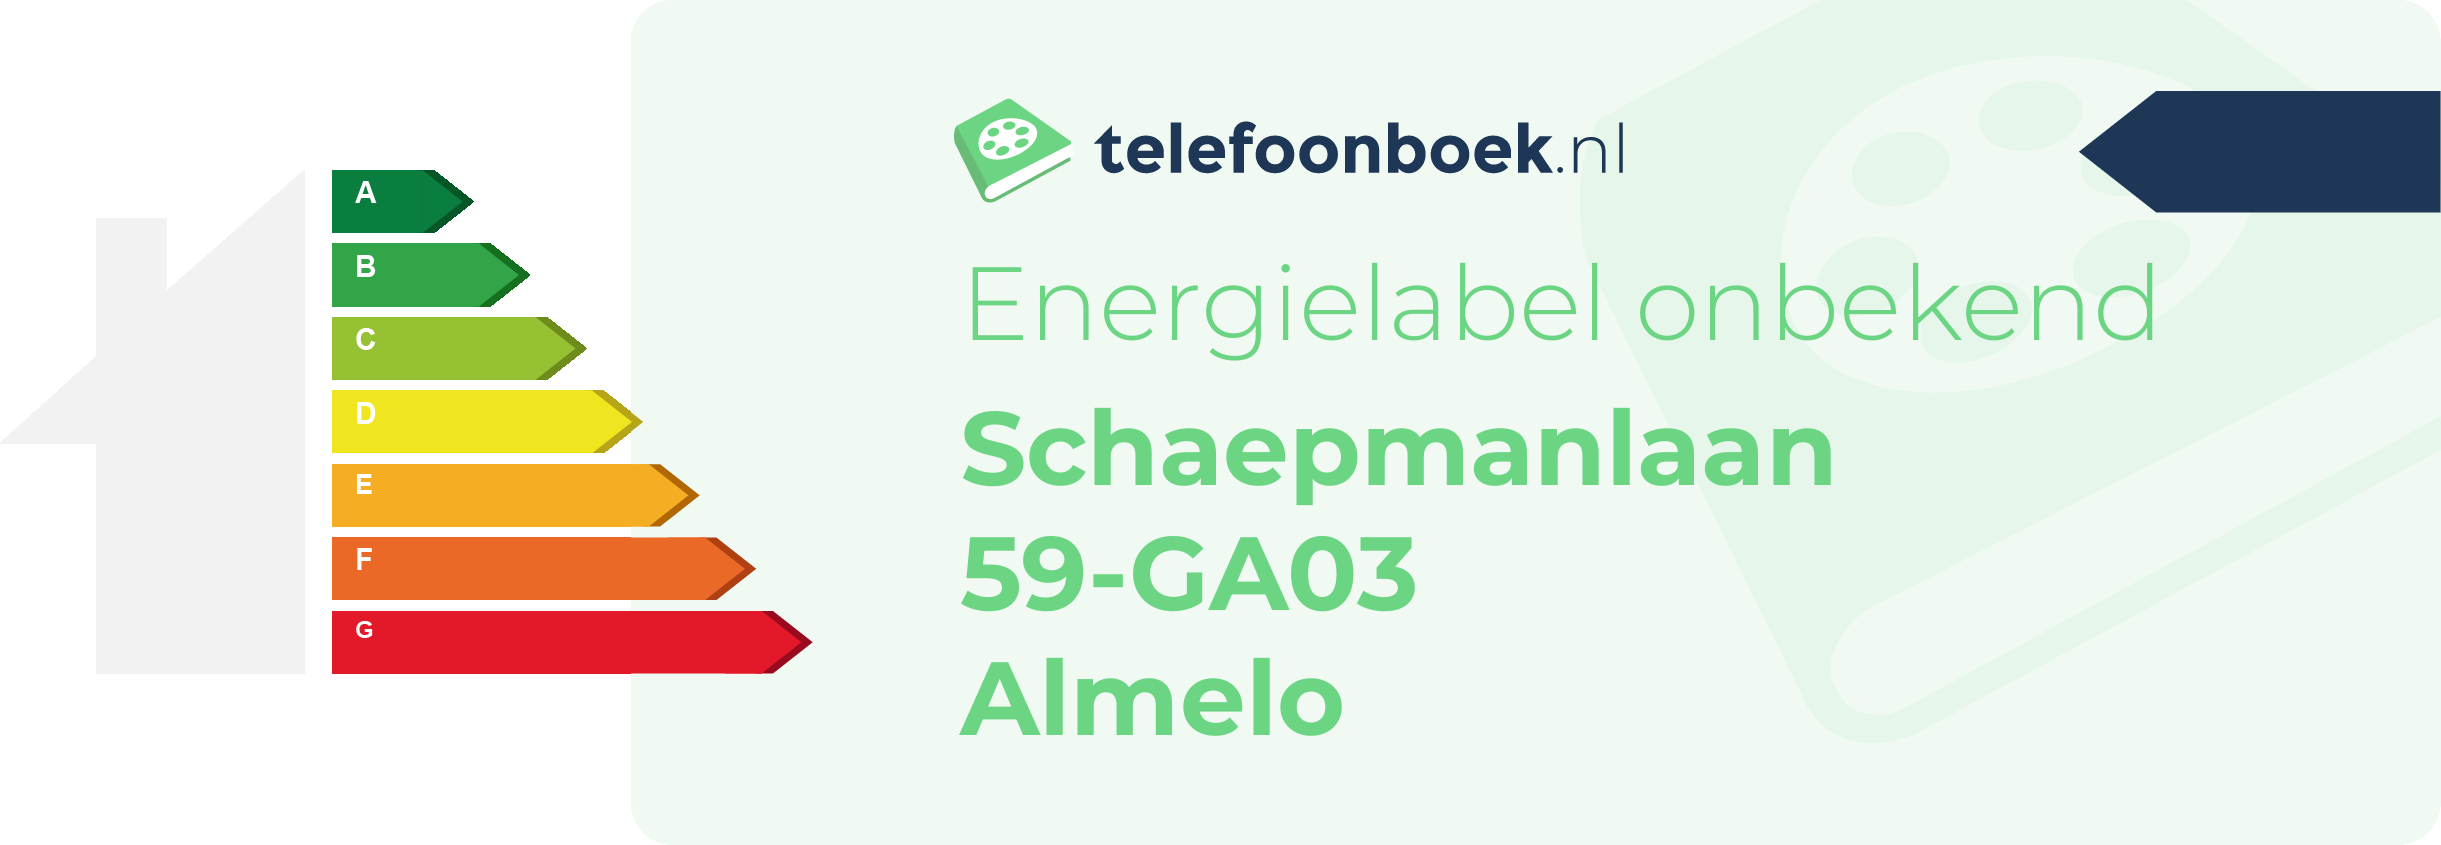 Energielabel Schaepmanlaan 59-GA03 Almelo